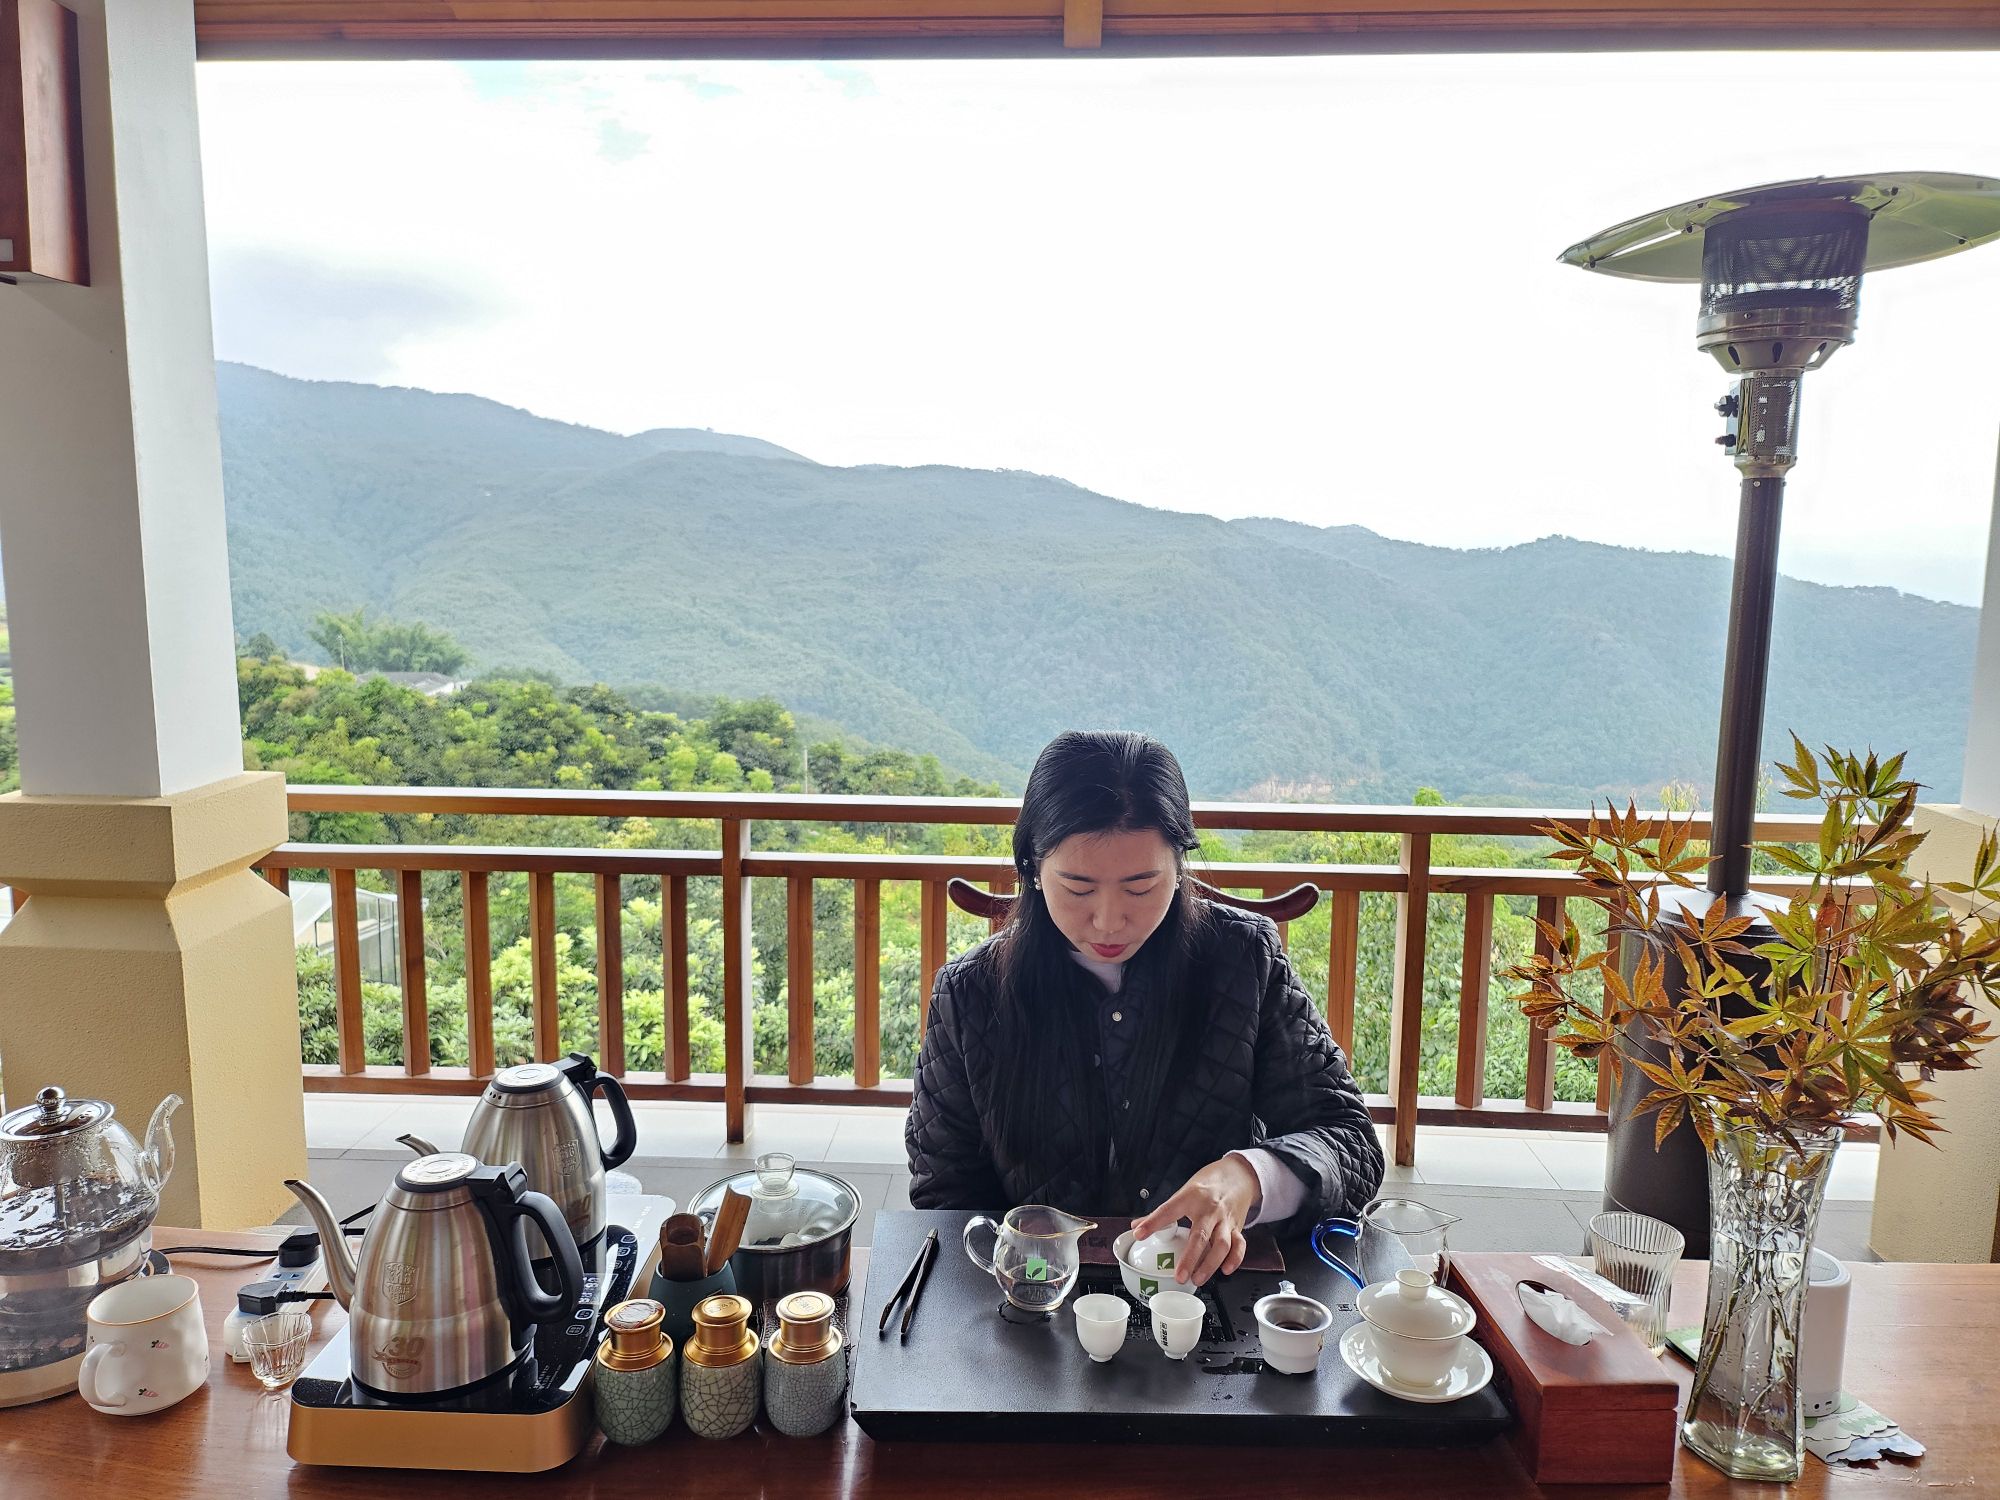 酒店在茶山之中，环境太好了，简直是世外桃源！！房间里赠送了茶叶可以自己泡，送的皂角燕窝也很美味。特别